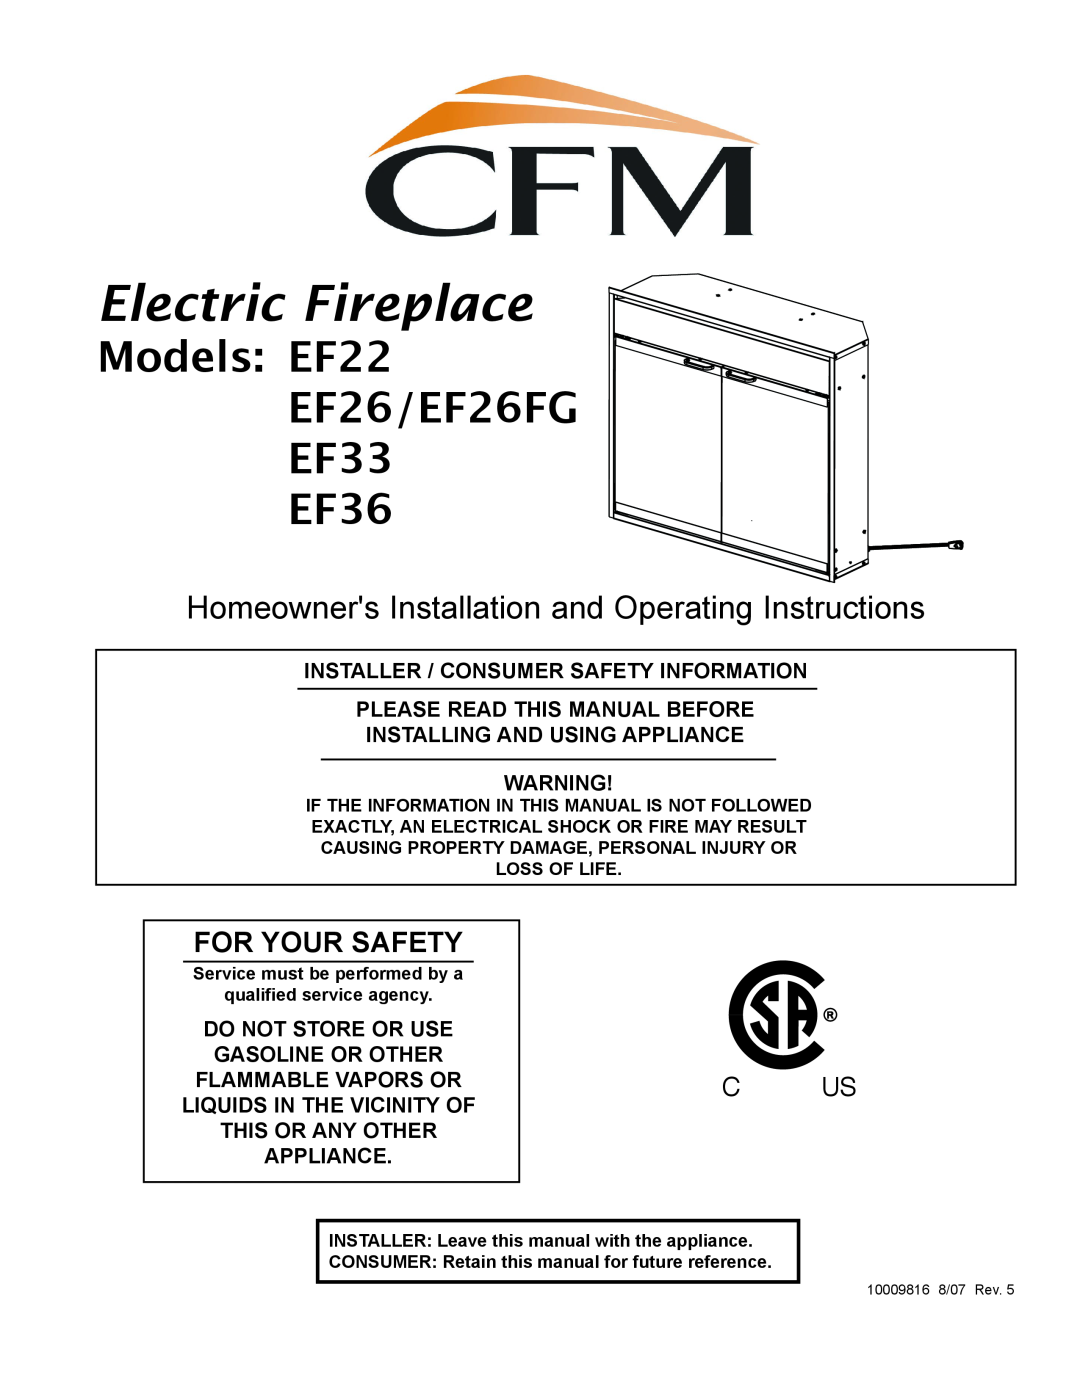 CFM Corporation manual Electric Fireplace, Models EF22 EF26/EF26FG EF33 EF36, For Your Safety 